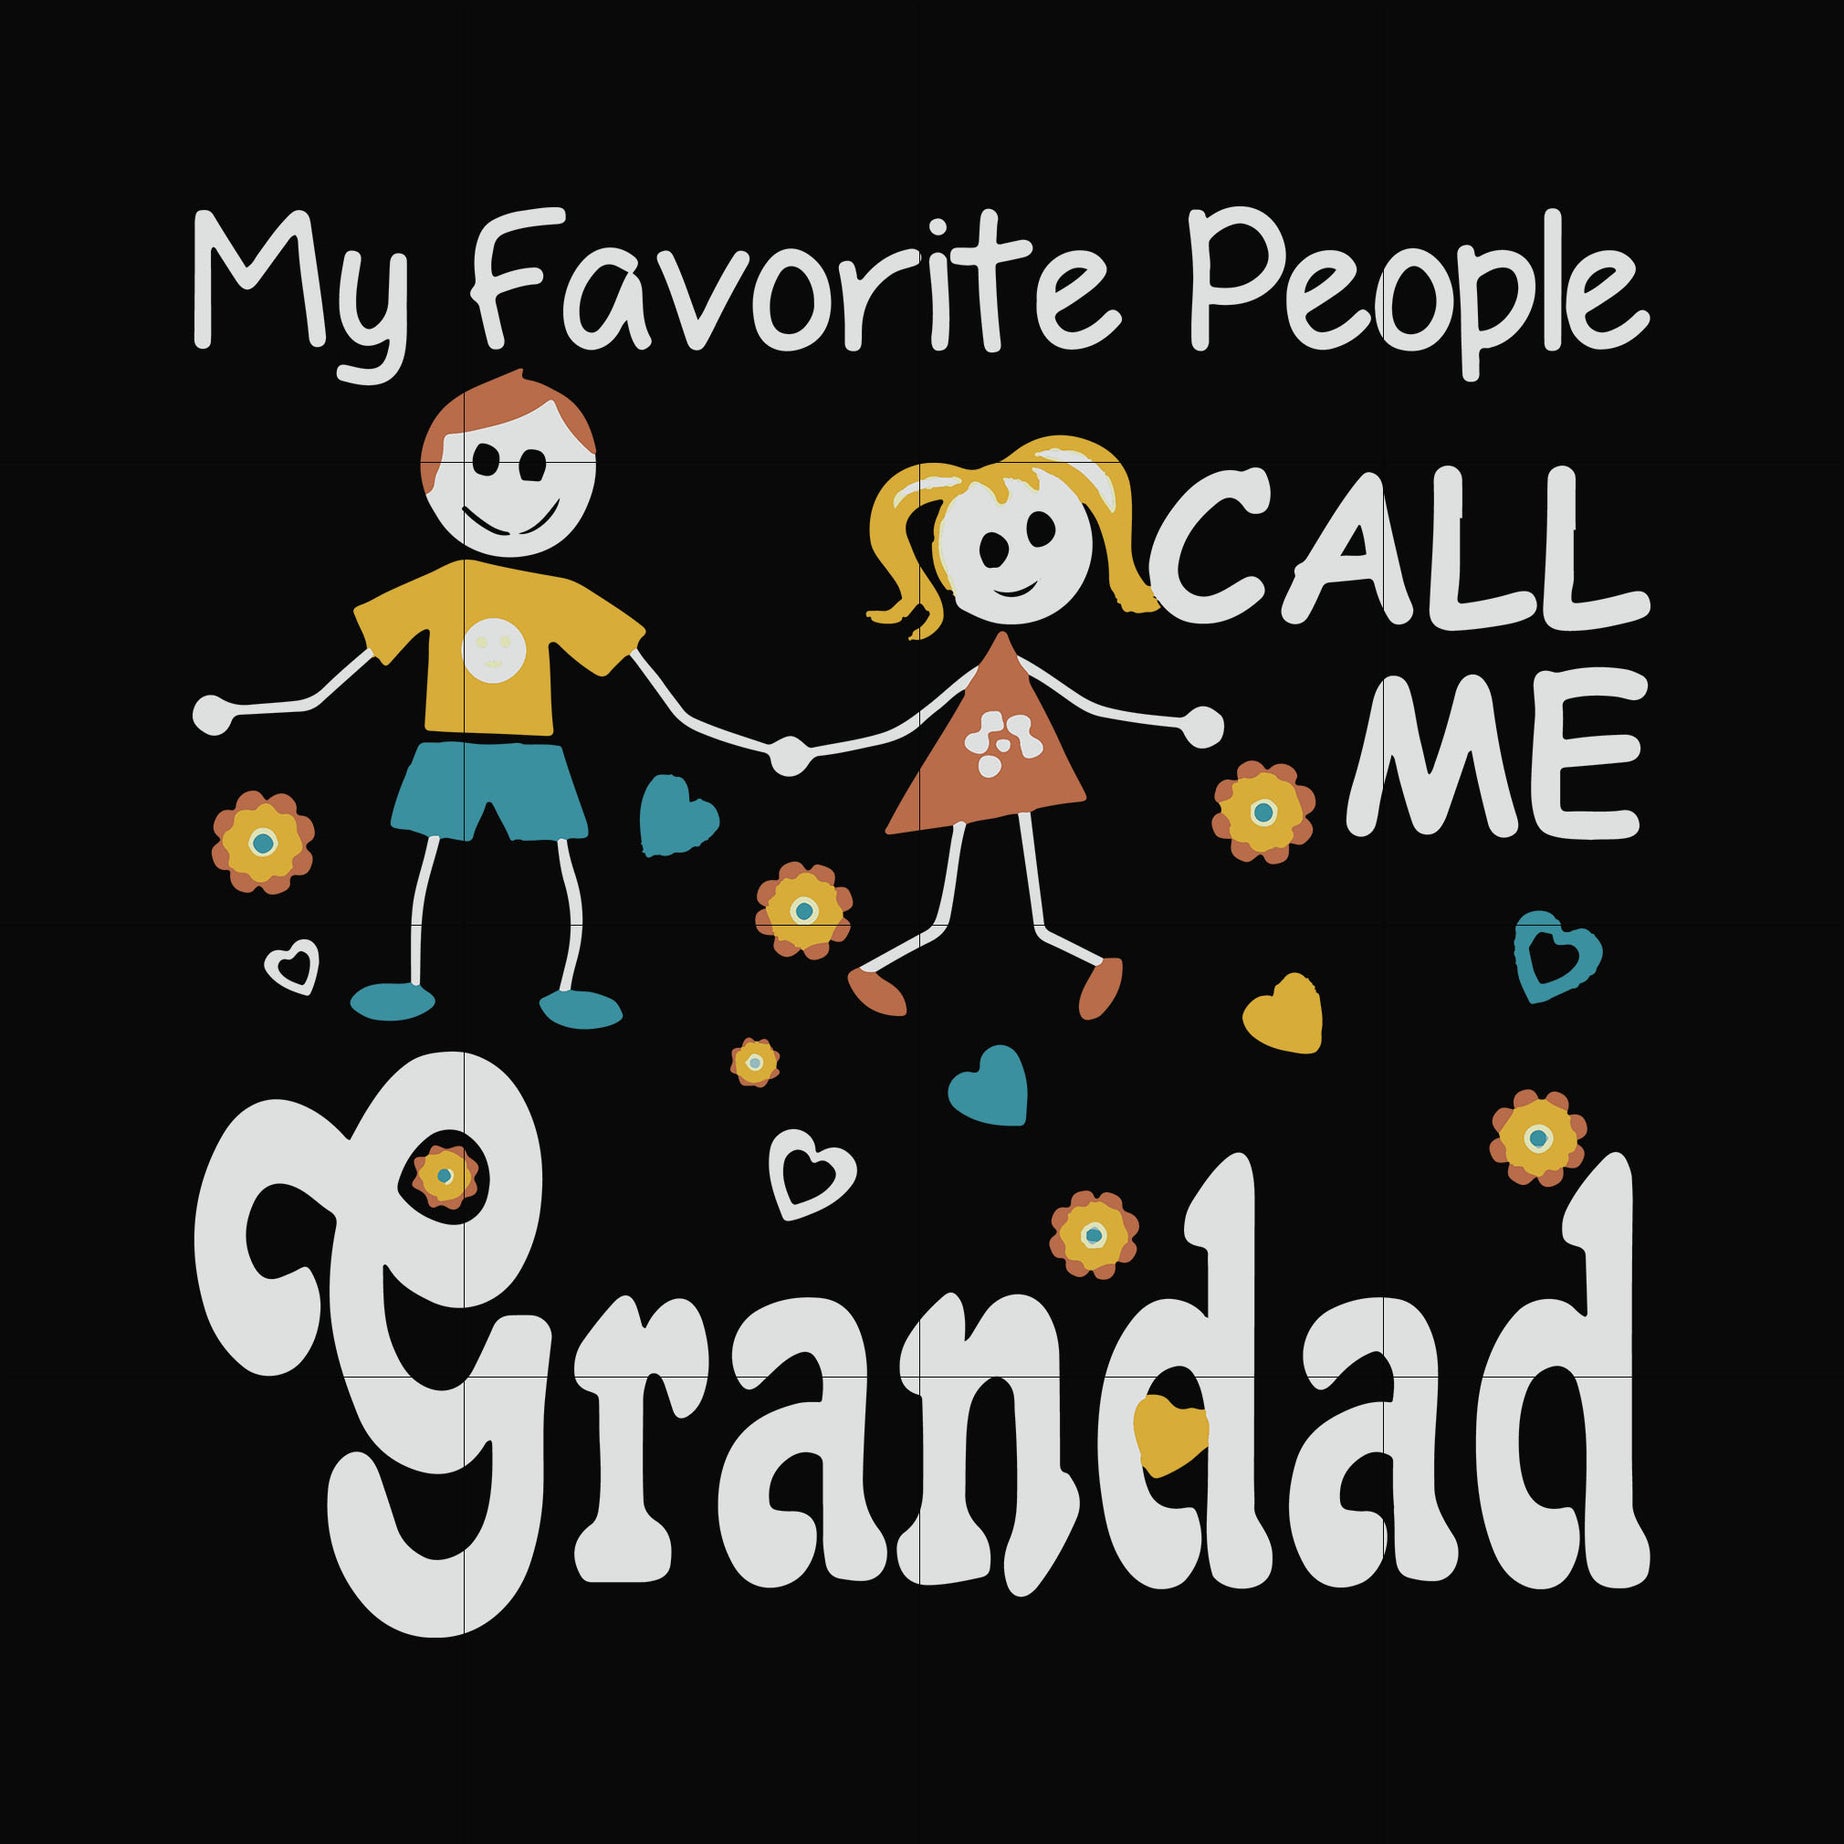 My favorite people call me grandad svg, png, dxf, eps file FN000828